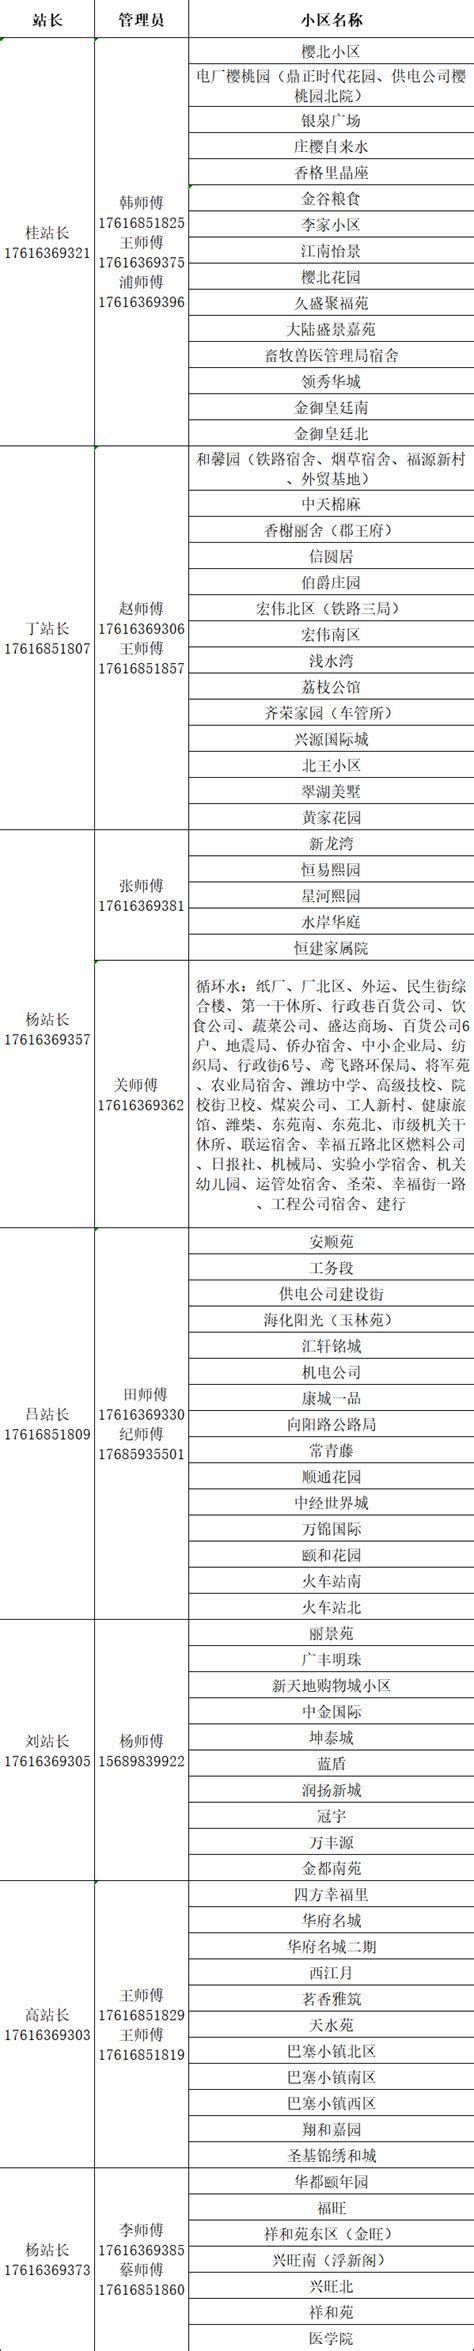 城区三家热力公司开通24小时服务热线 - 新闻播报 - 潍坊新闻网